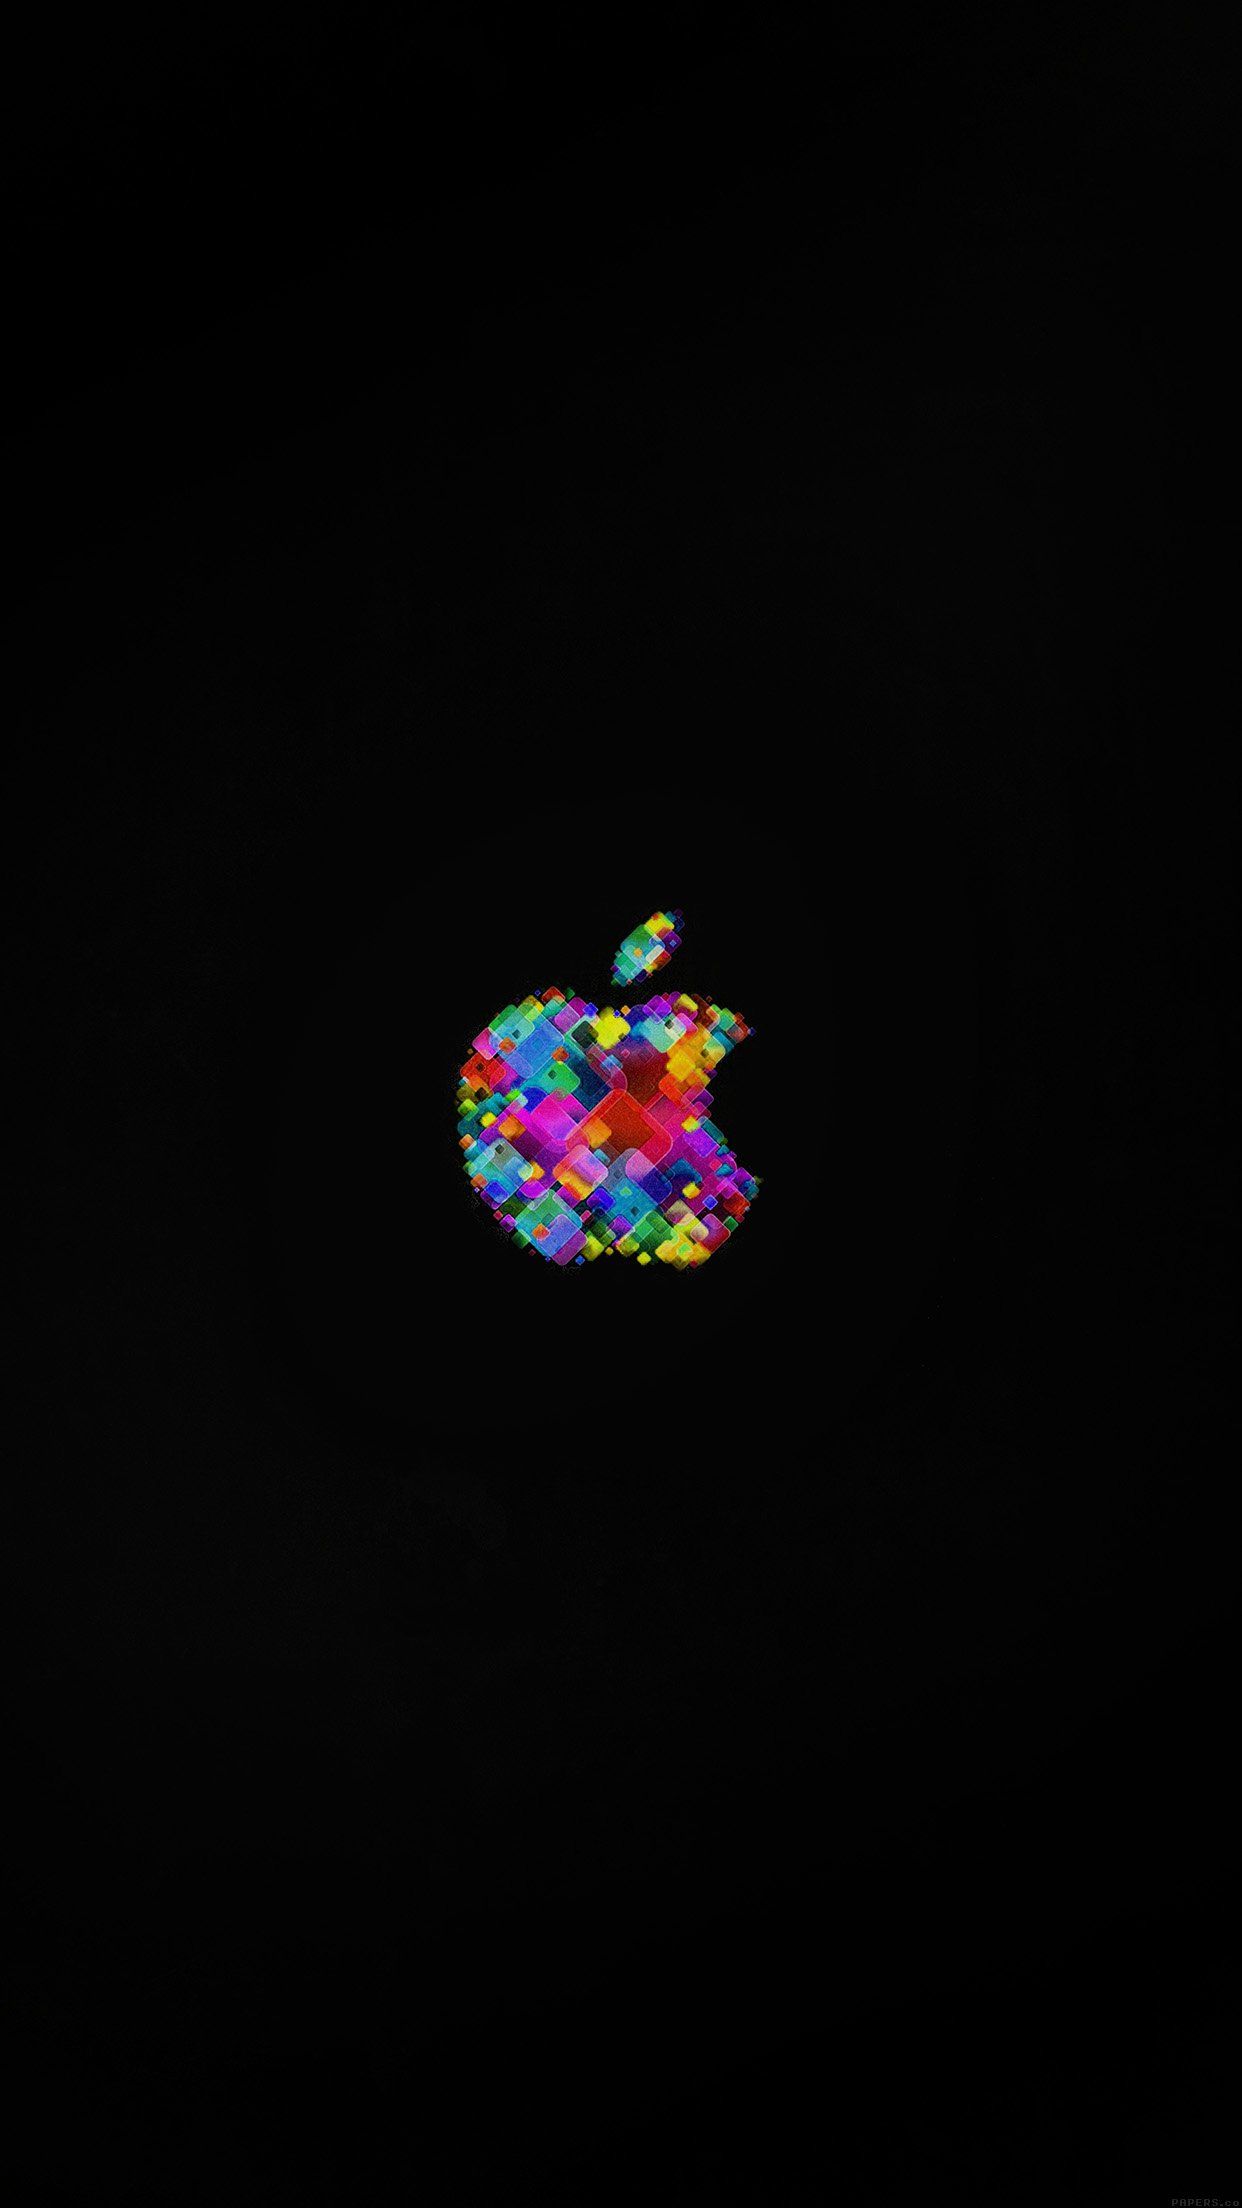 Apple Event Logo Art Dark Minimal Android wallpaper HD